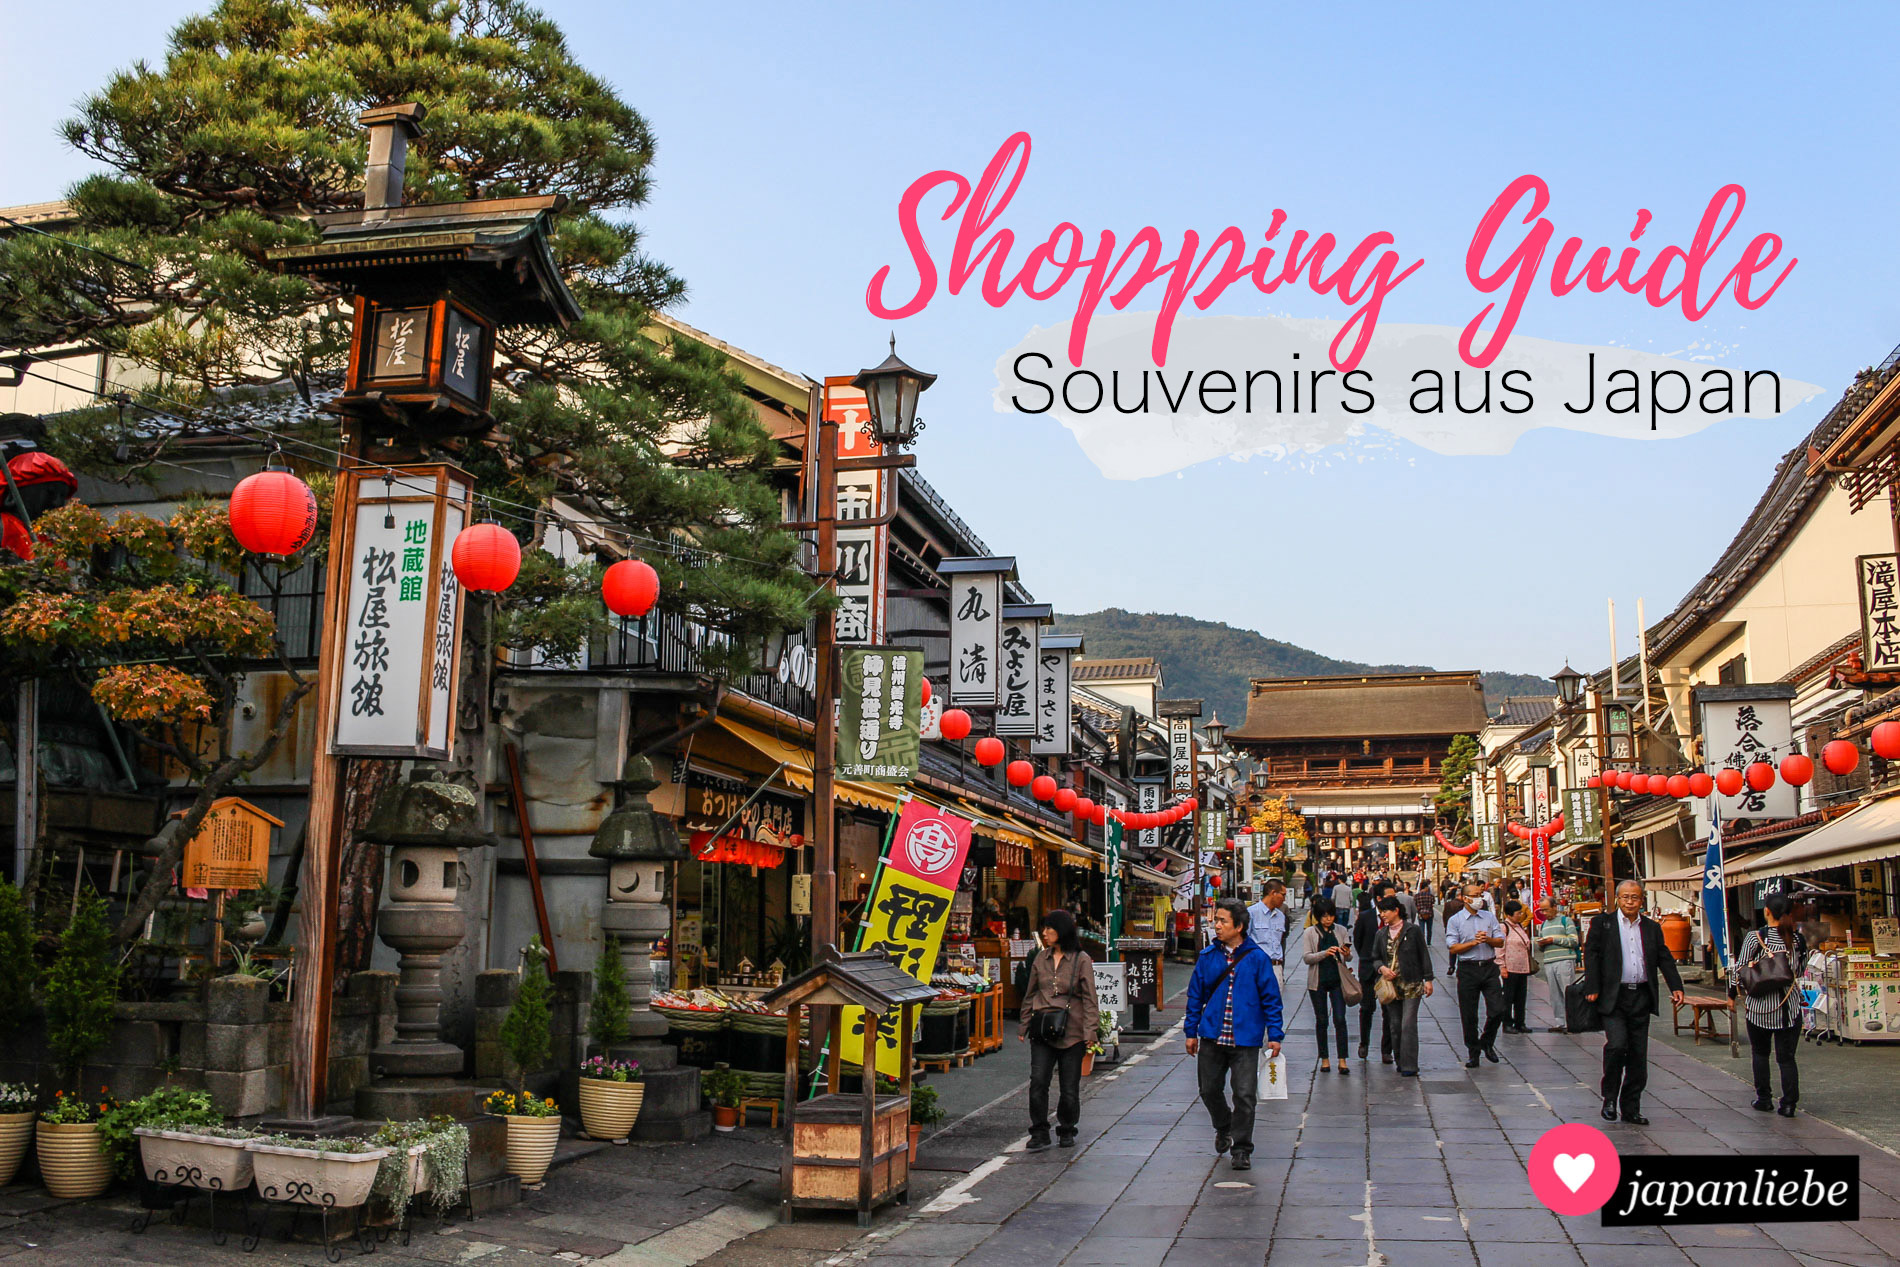 Shopping Guide für die besten Souvenirs aus Japan.